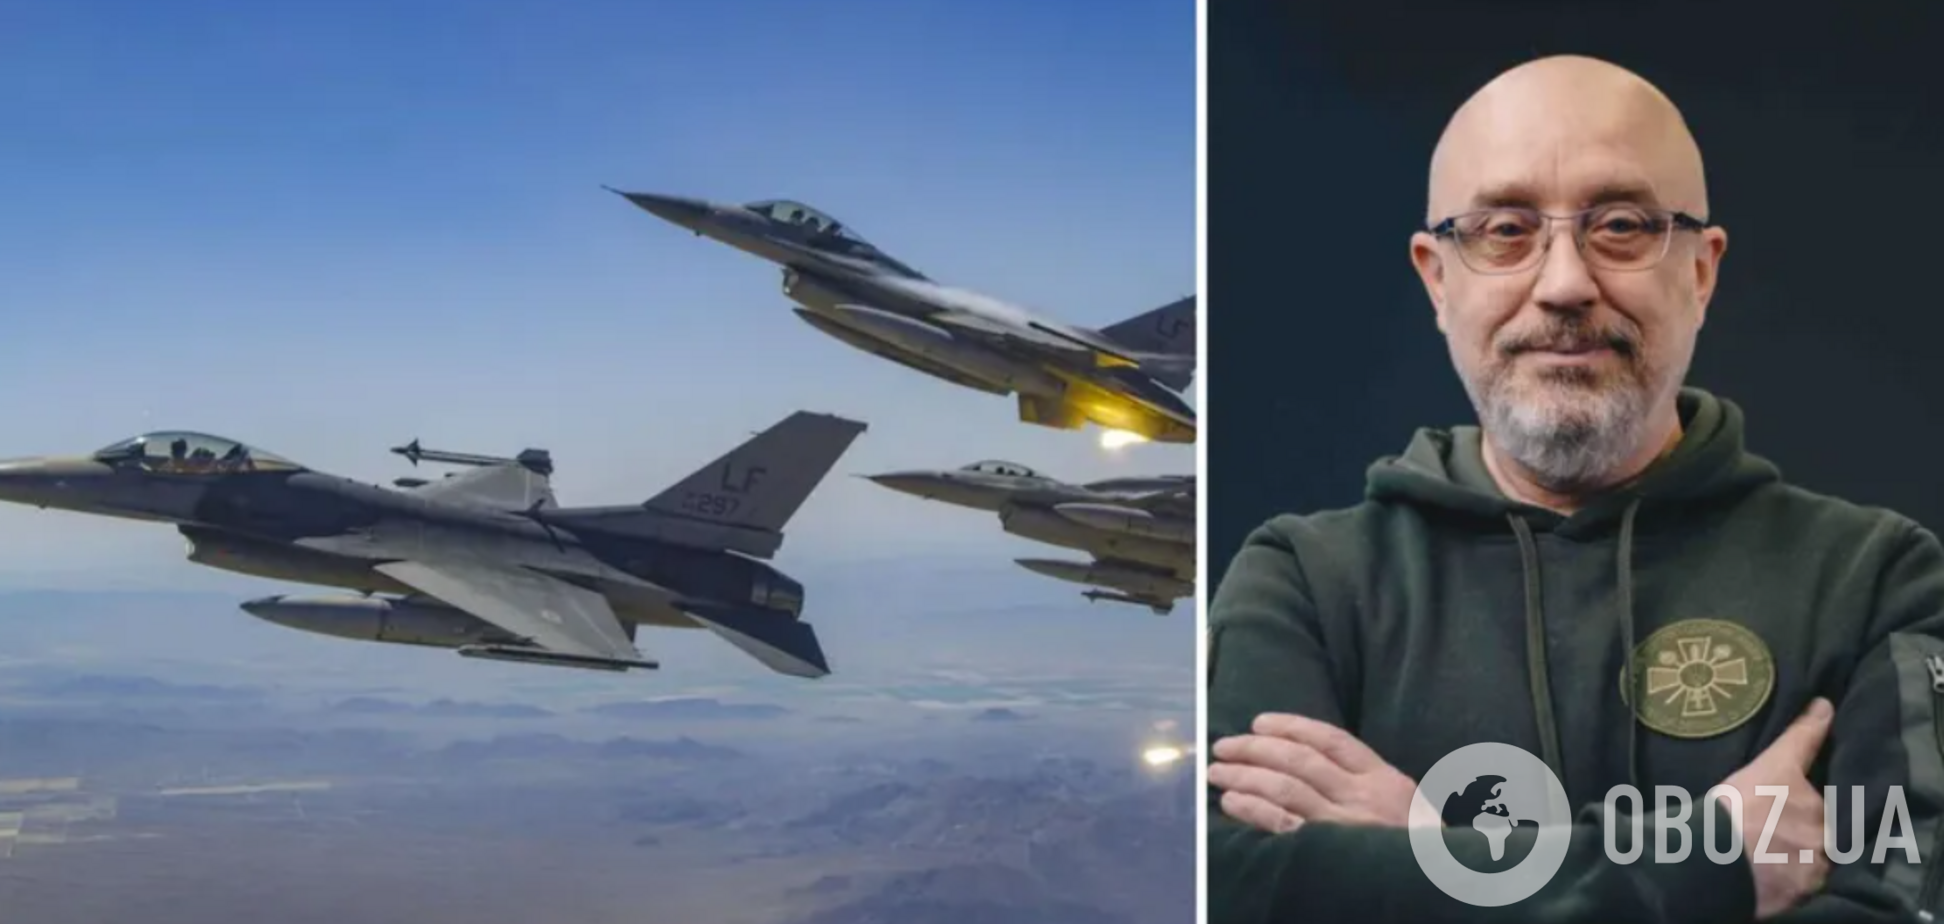 Іноземний легіон готовий прийняти пілотів, які знають, як керувати F-16, і хочуть допомогти Україні, – Резніков 